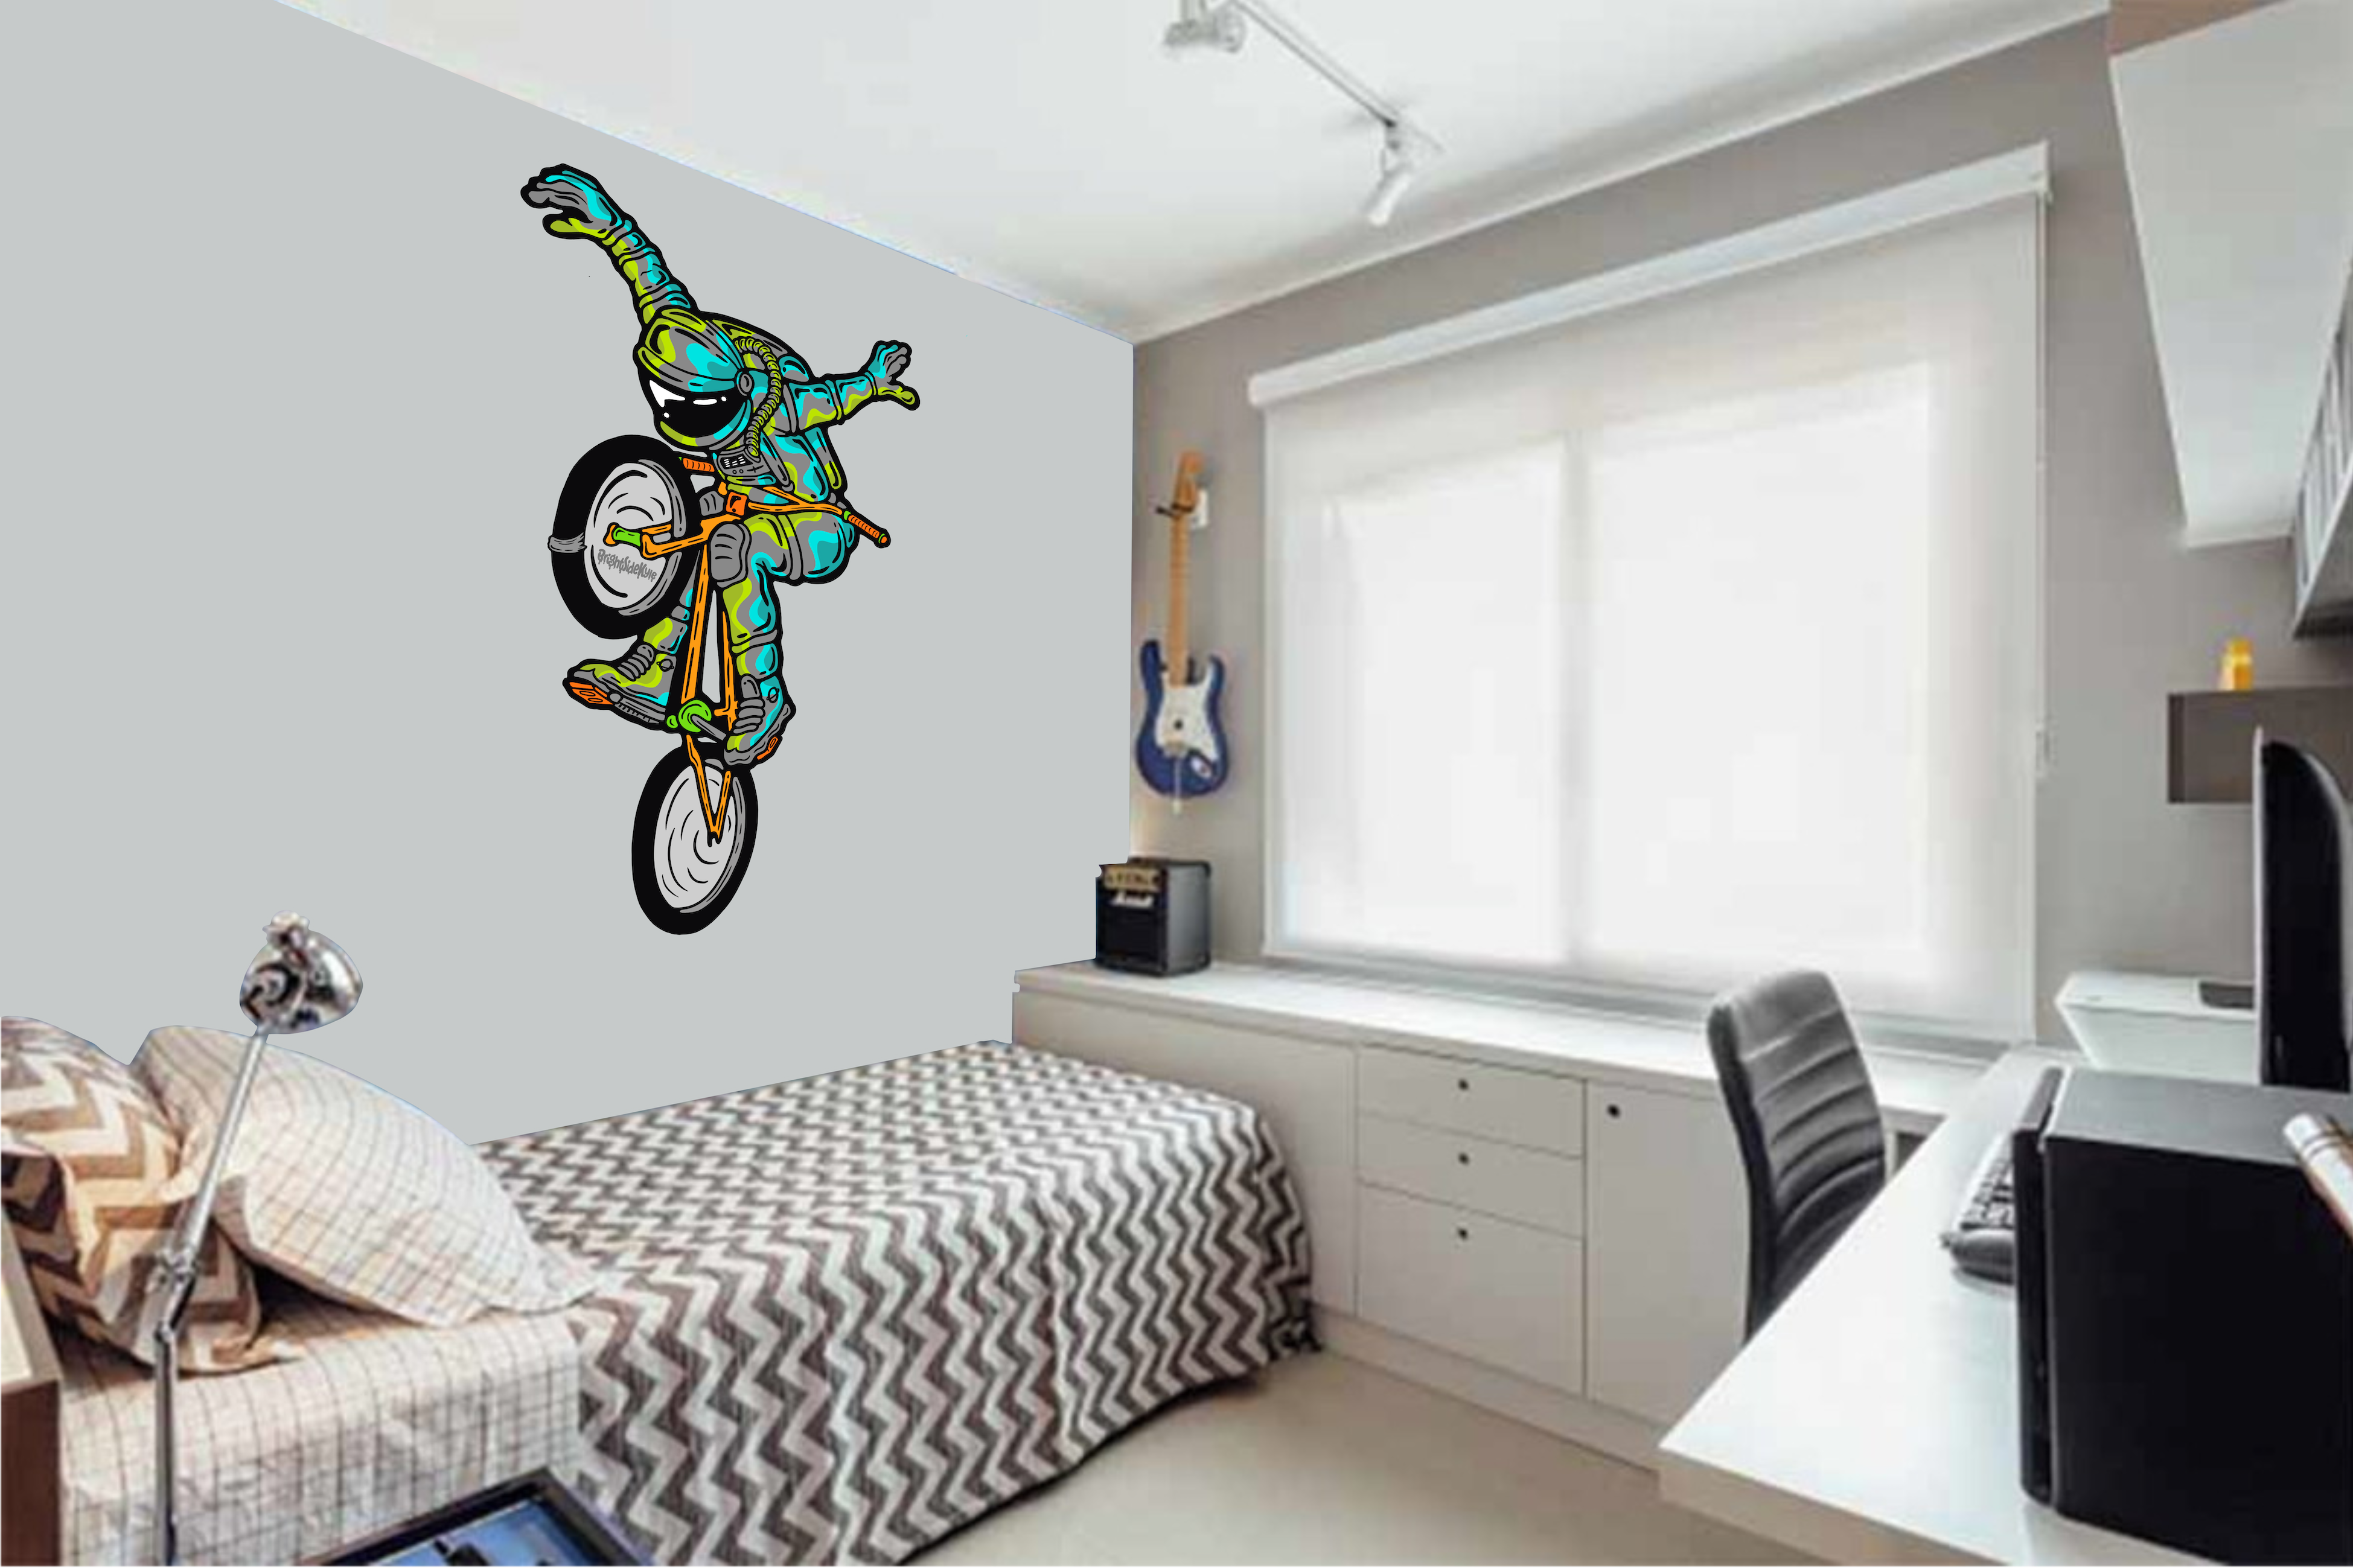 Wall Art Decal - AstroDude BMX